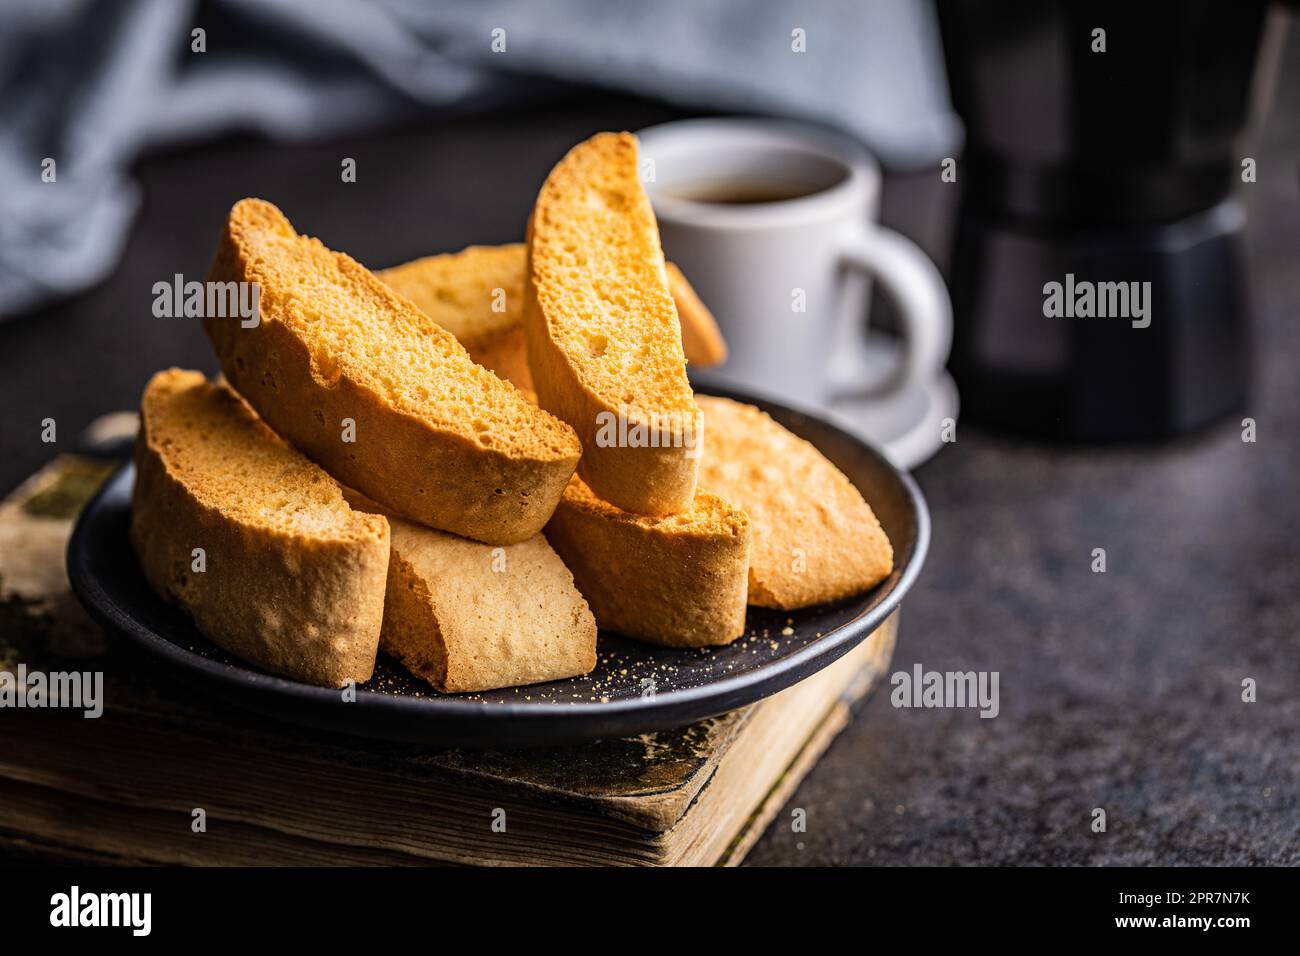 Süße anicini-Kekse. Italienische Biscotti mit Anisgeschmack auf einem Teller. Stockfoto